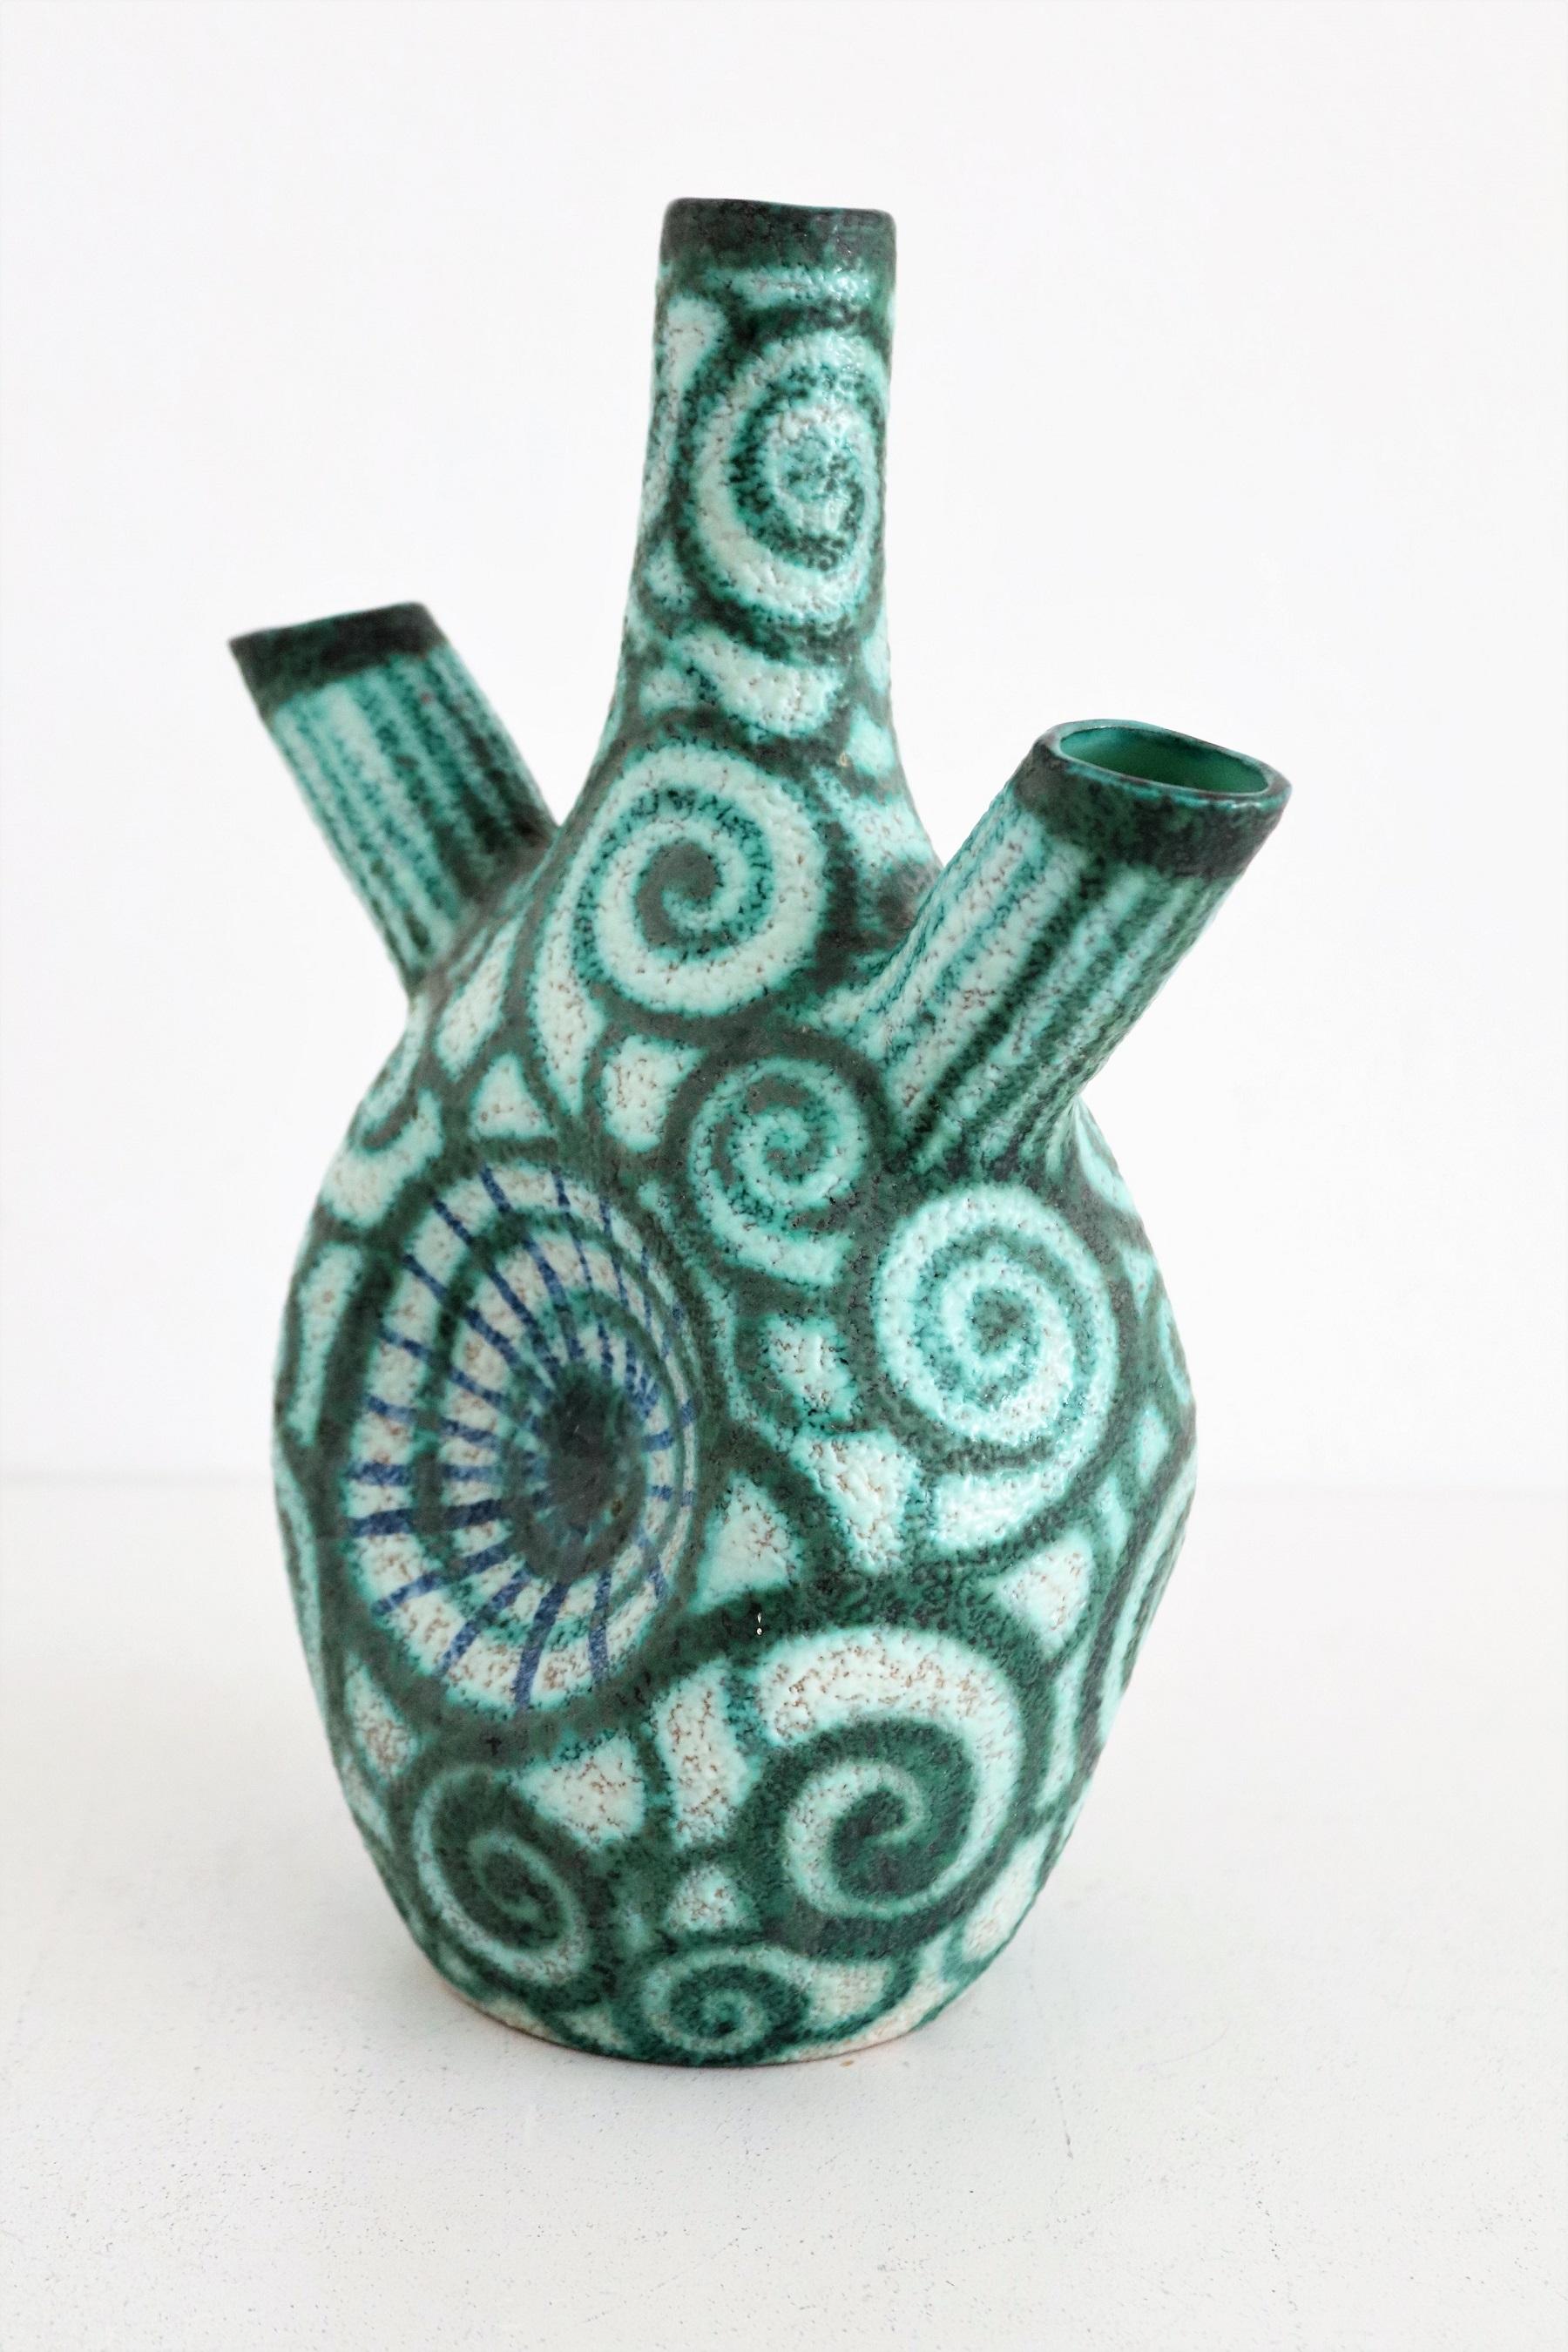 Wunderschöne und seltene Vase aus polychromer Keramik in bizzarer Form.
Hergestellt in der Töpferwerkstatt von Giuseppe Barile in Albisola, Italien.
Die Vase ist handgefertigt und handbemalt in schönen hellen Farben.
Die Manufaktur wurde 1950